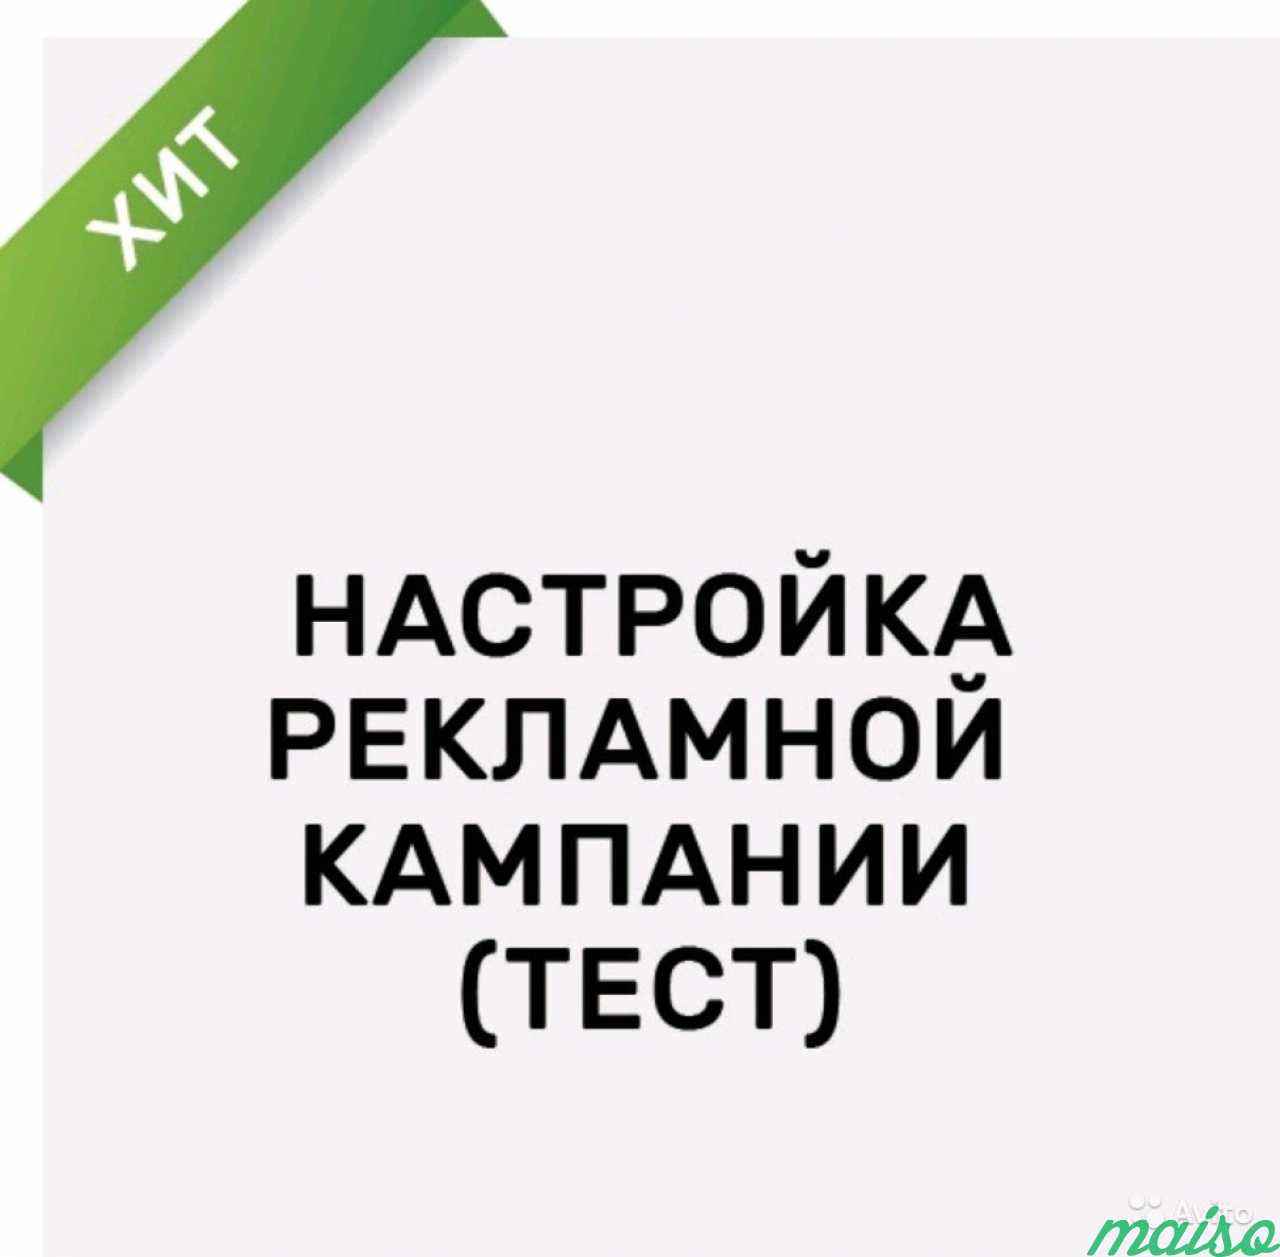 Реклама в vk в Санкт-Петербурге. Фото 1